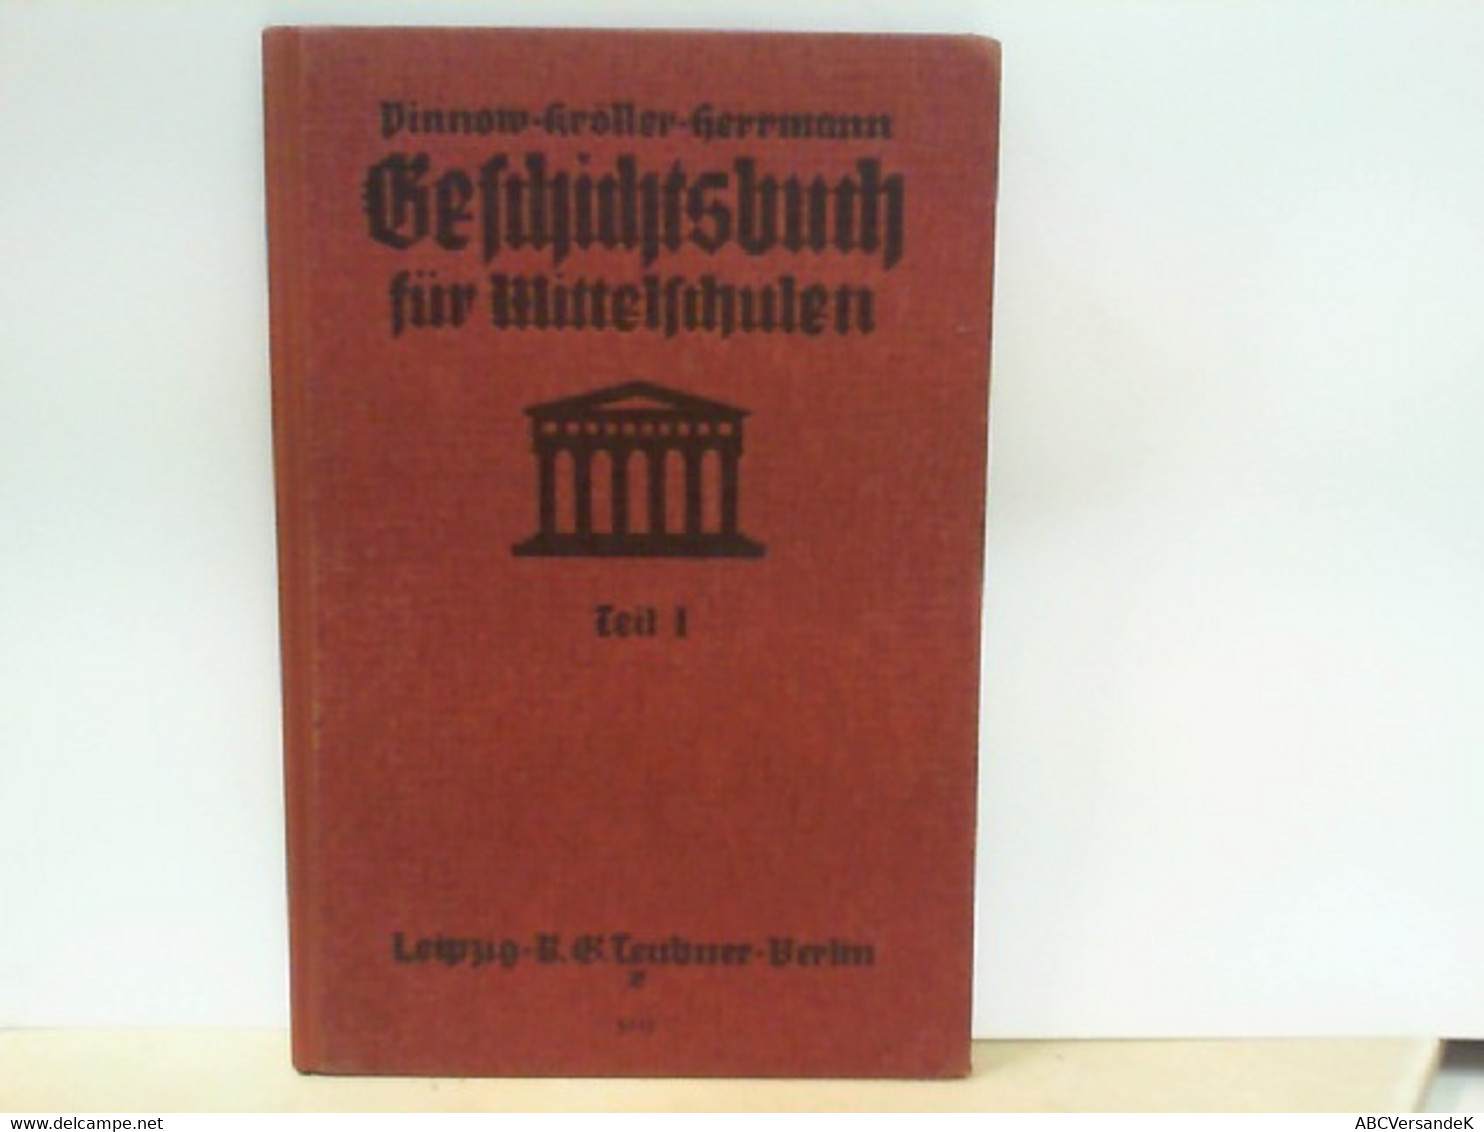 Pinnows Geschichtsbuch Für Mittelschulen - Teil 1 : Alte Geschichte - School Books